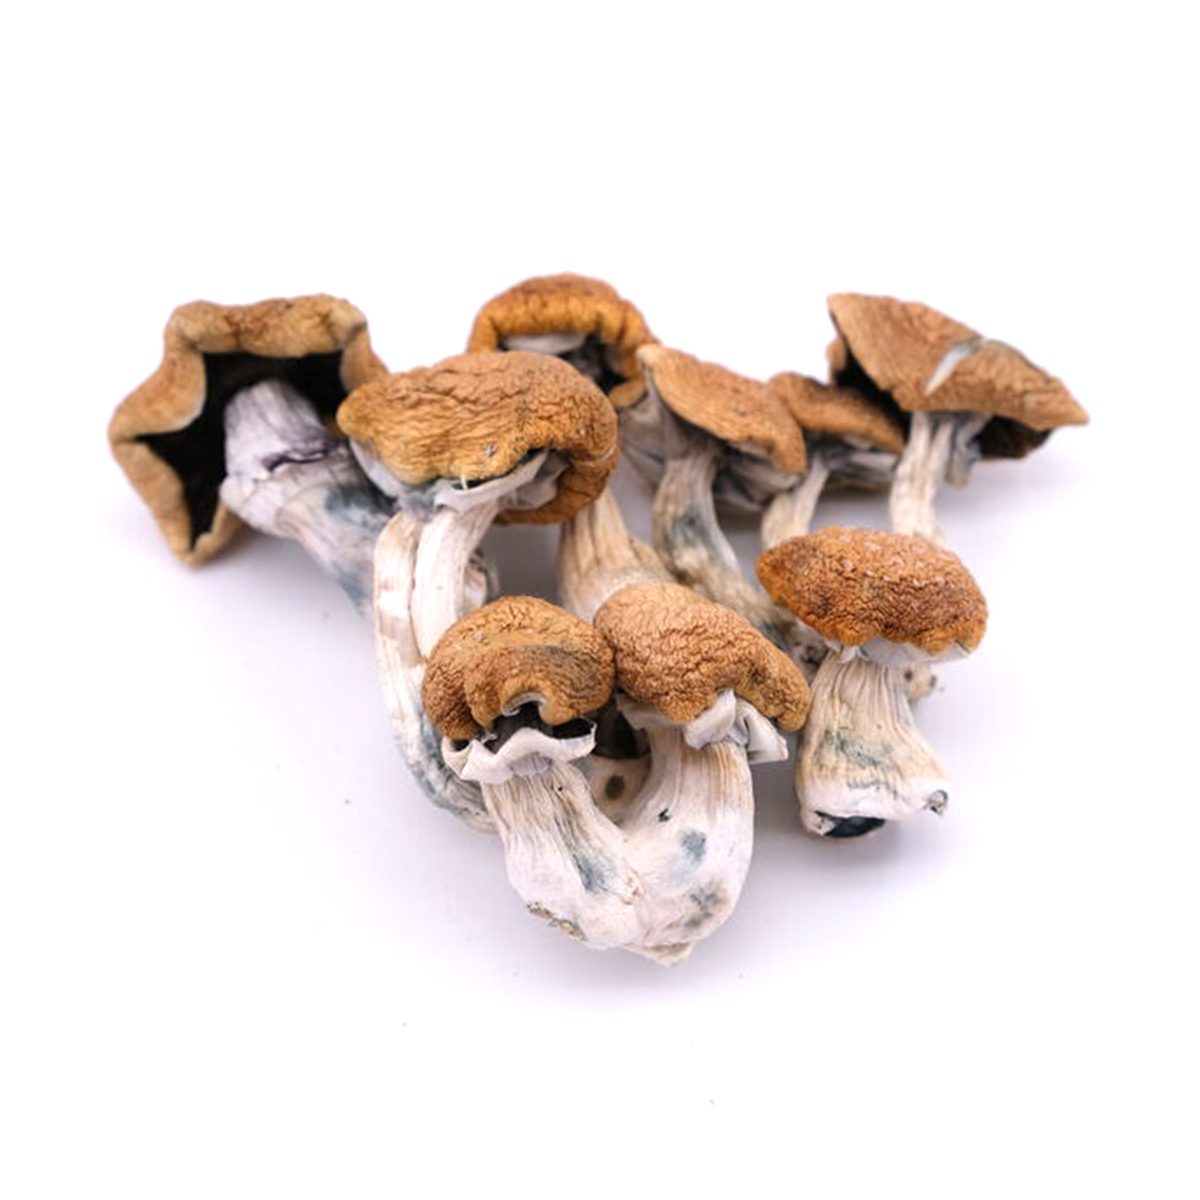 Buy Vietnamese Mushrooms Online Chandler